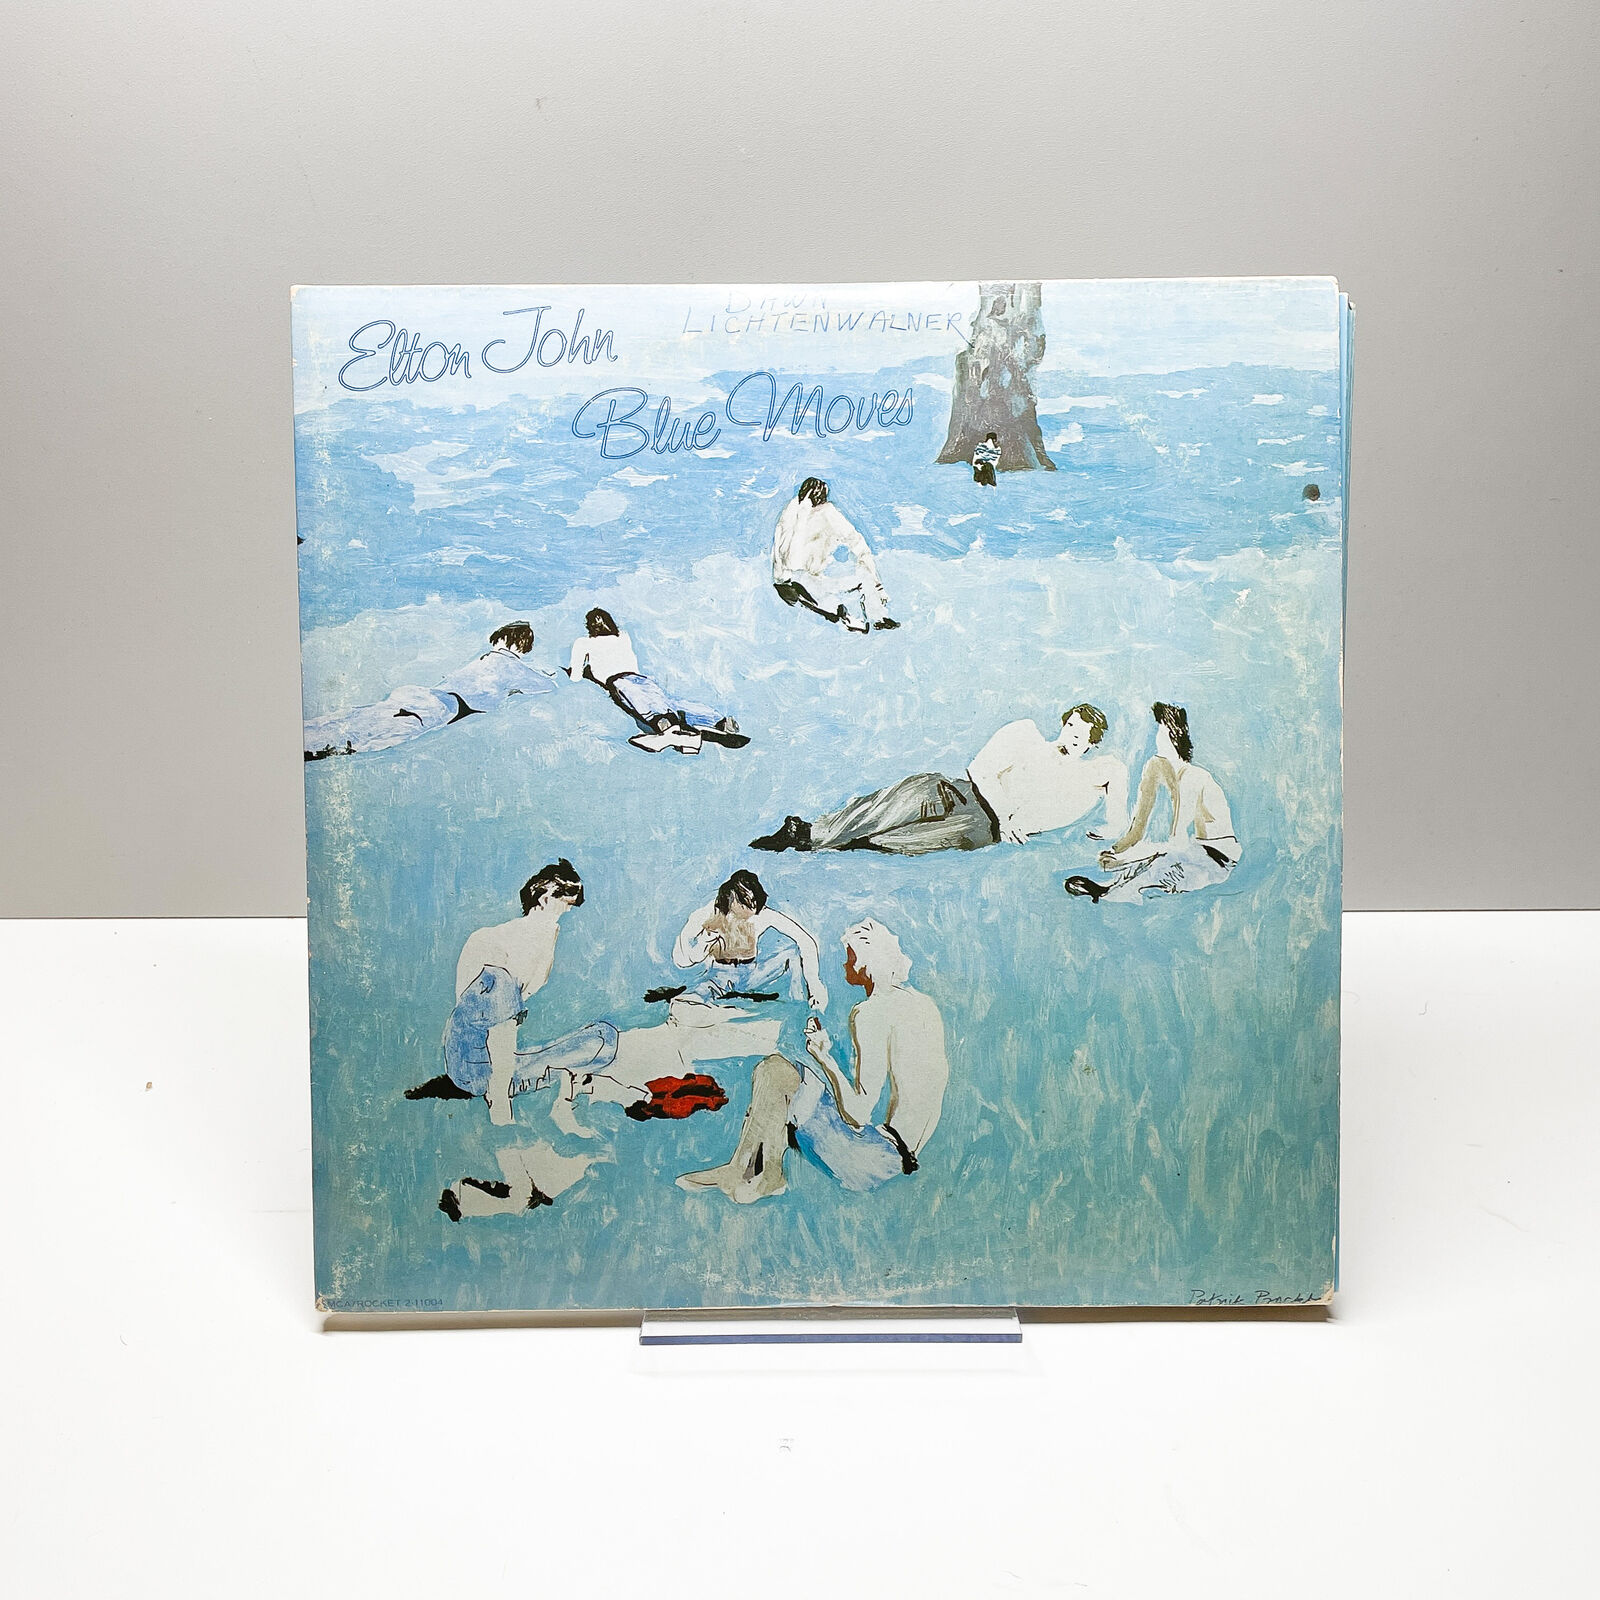 Elton John - Blue Moves - Vinyl LP Record - 1974